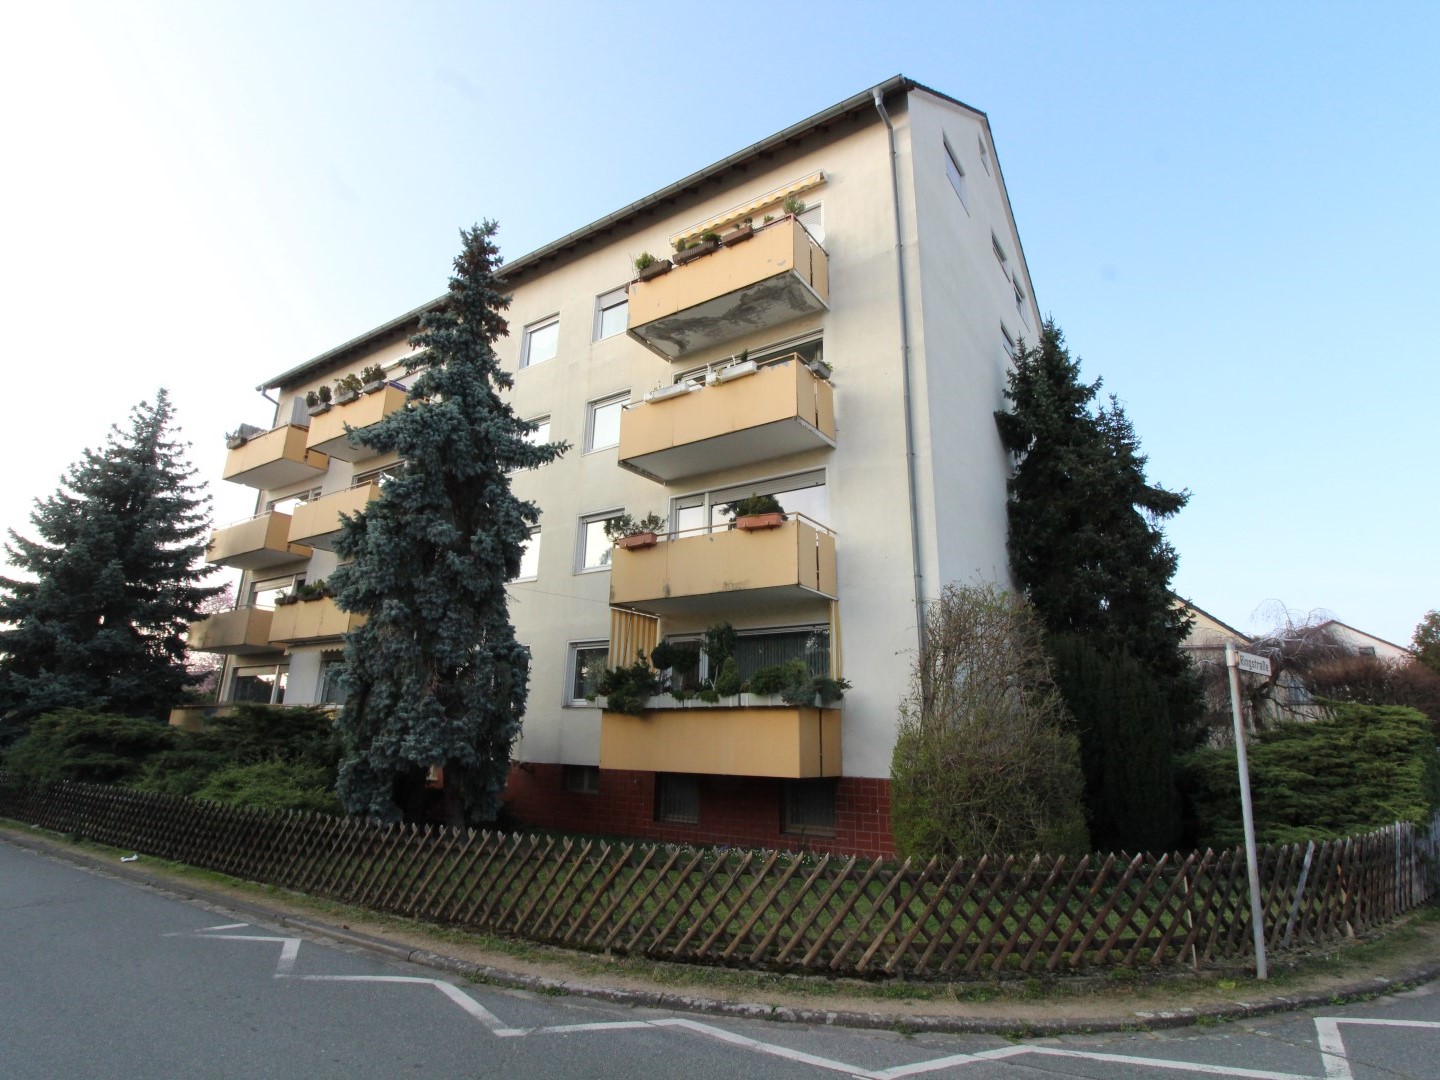 Objekt 929: Solide 3-Zimmer-Wohnung für die kleine Familie in ruhiger Wohnlage von Bickenbach